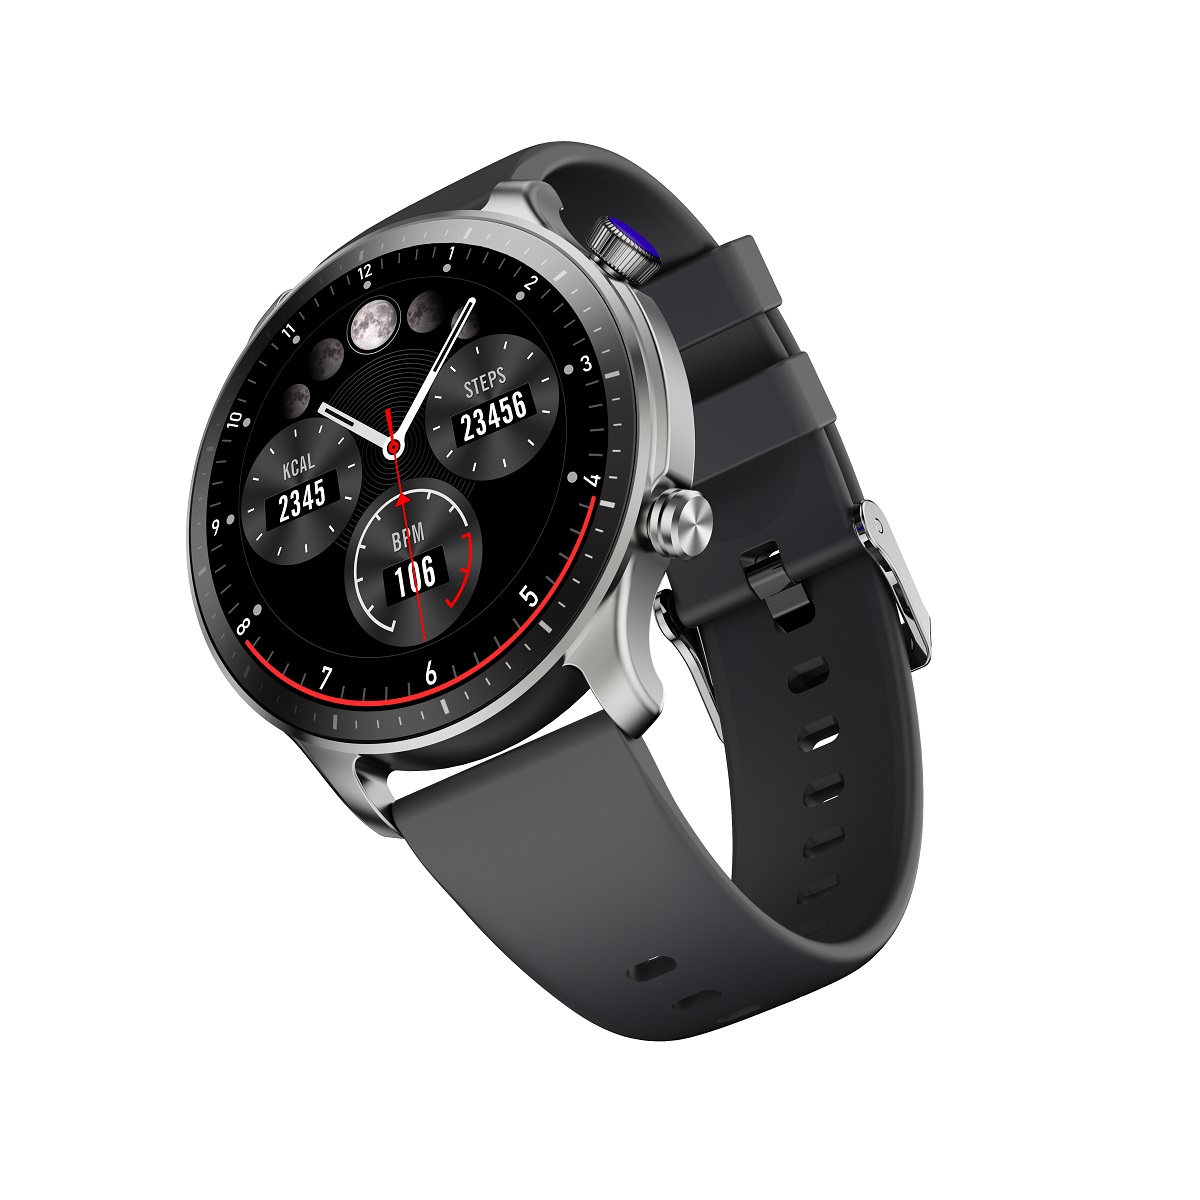 Elegancki zegarek mski wodoodporny elektroniczny sportowy z okrga tarcz smartwatch Riversong Motive 9 Pro szary SW901 / 2